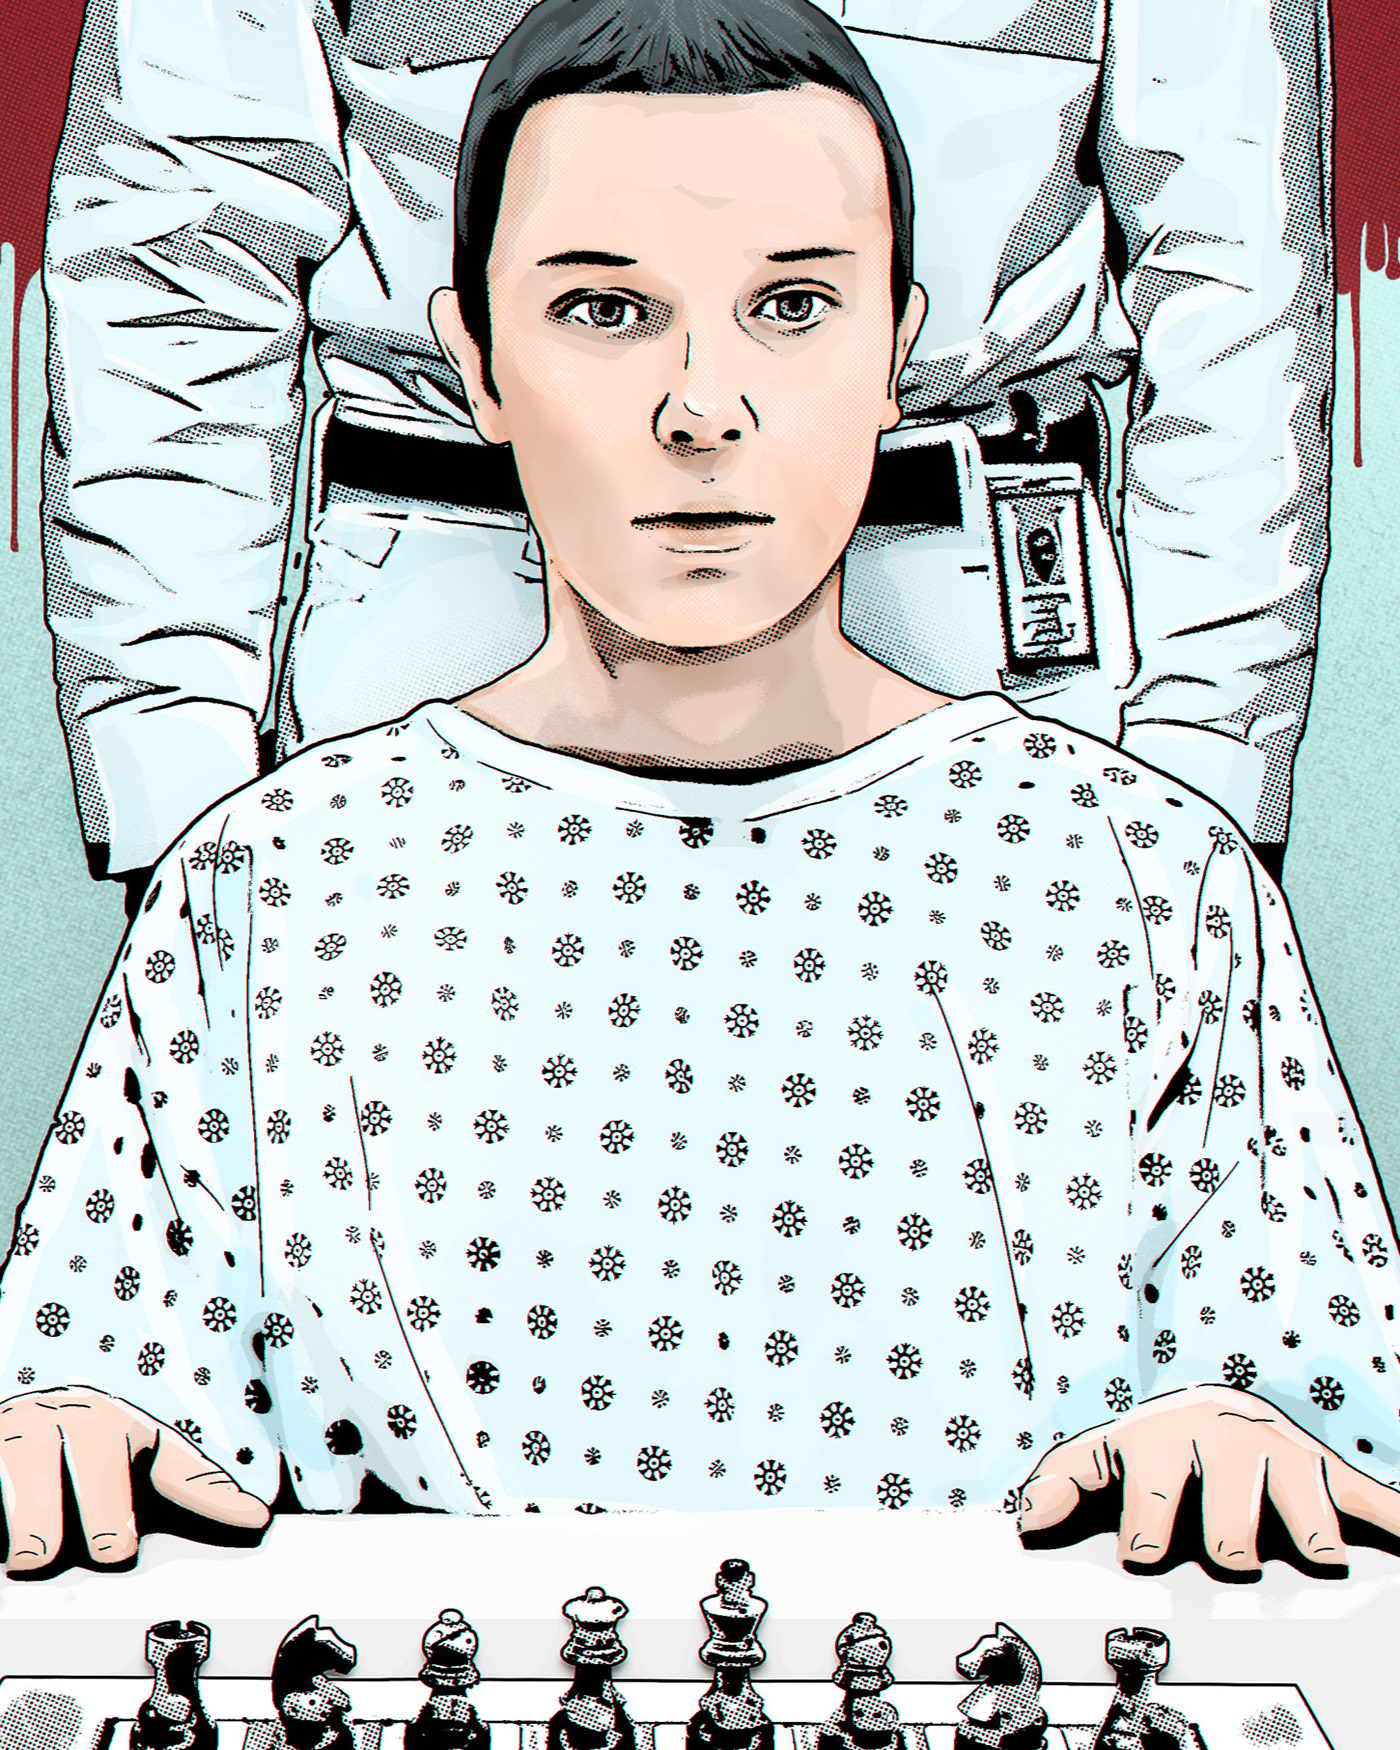 arte digital Cover Art Digital Art  eleven ilustracion Netflix Poster Design Stranger Things Stranger Things 4 vecna